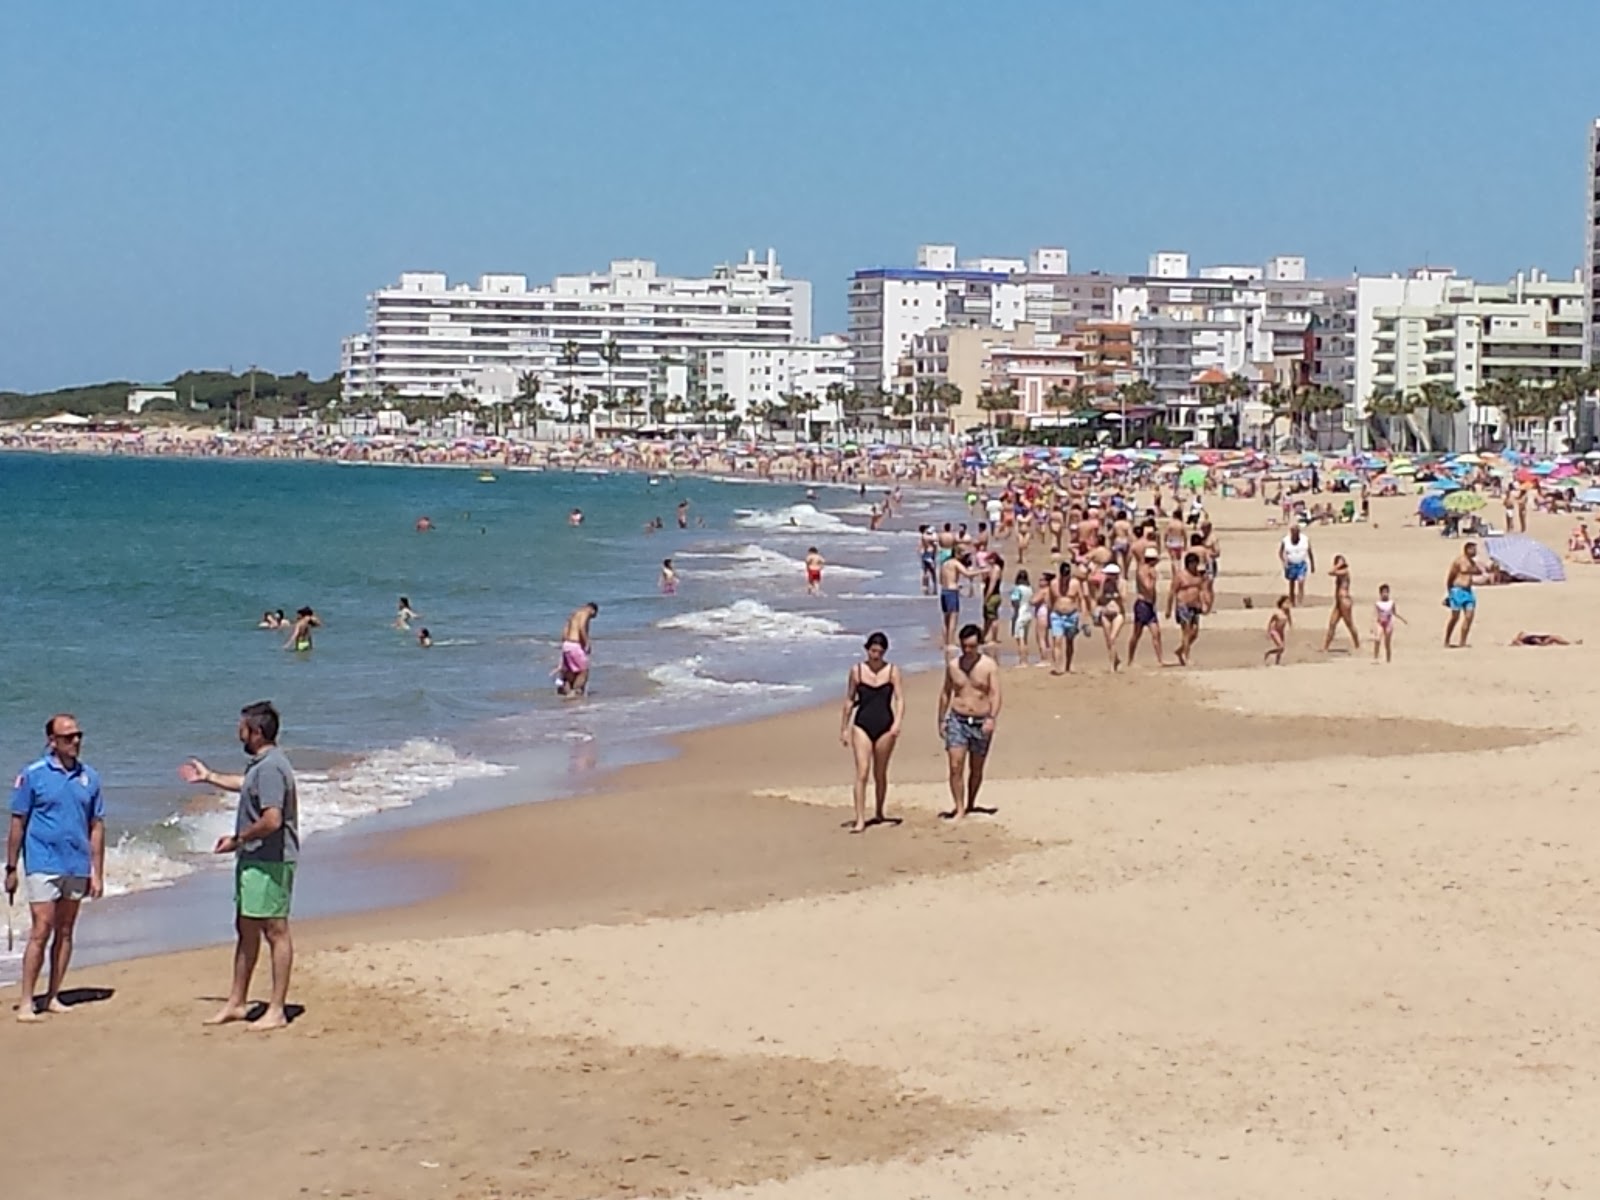 Playa de la Costilla'in fotoğrafı - rahatlamayı sevenler arasında popüler bir yer